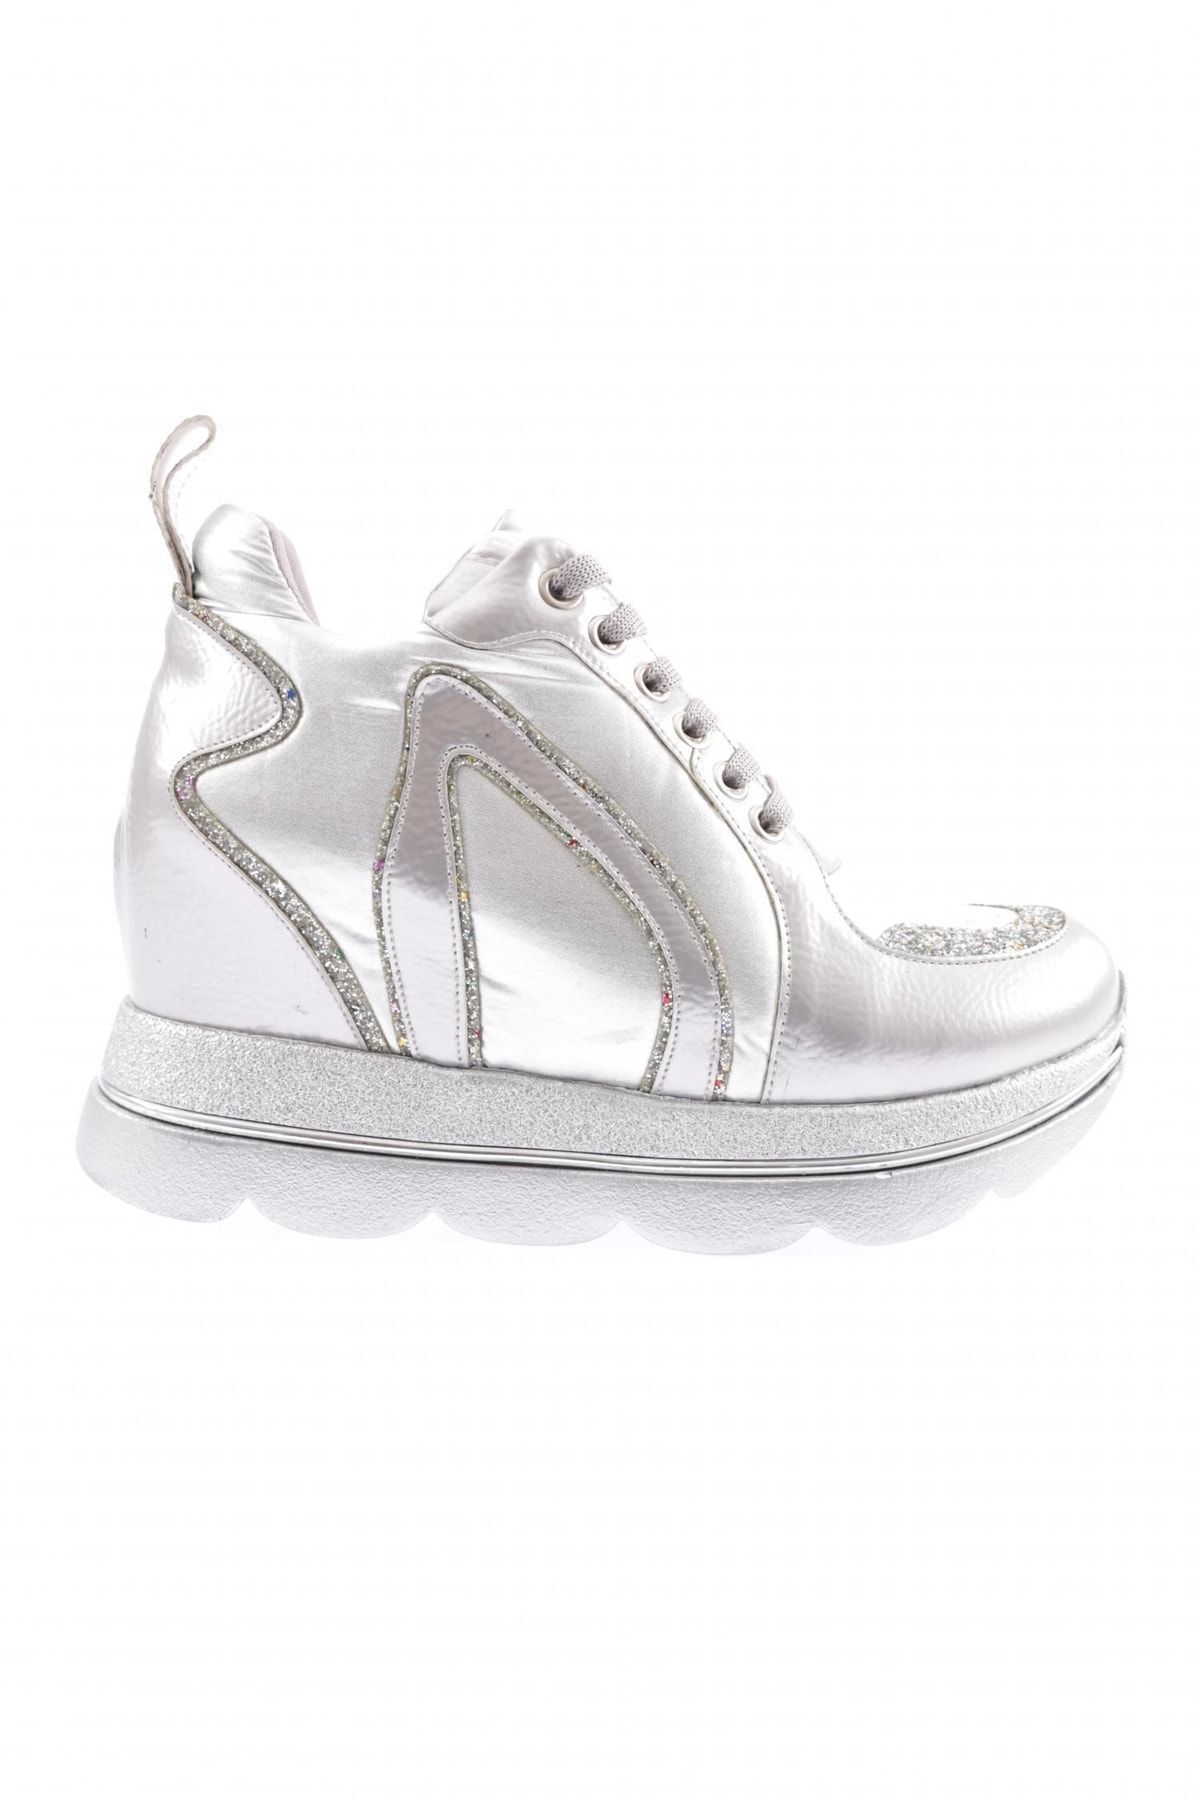 Dgn 1062-23y Kadın Mega Kalın Taban Silver Taşlı Sneakers Ayakkabı Gümüş